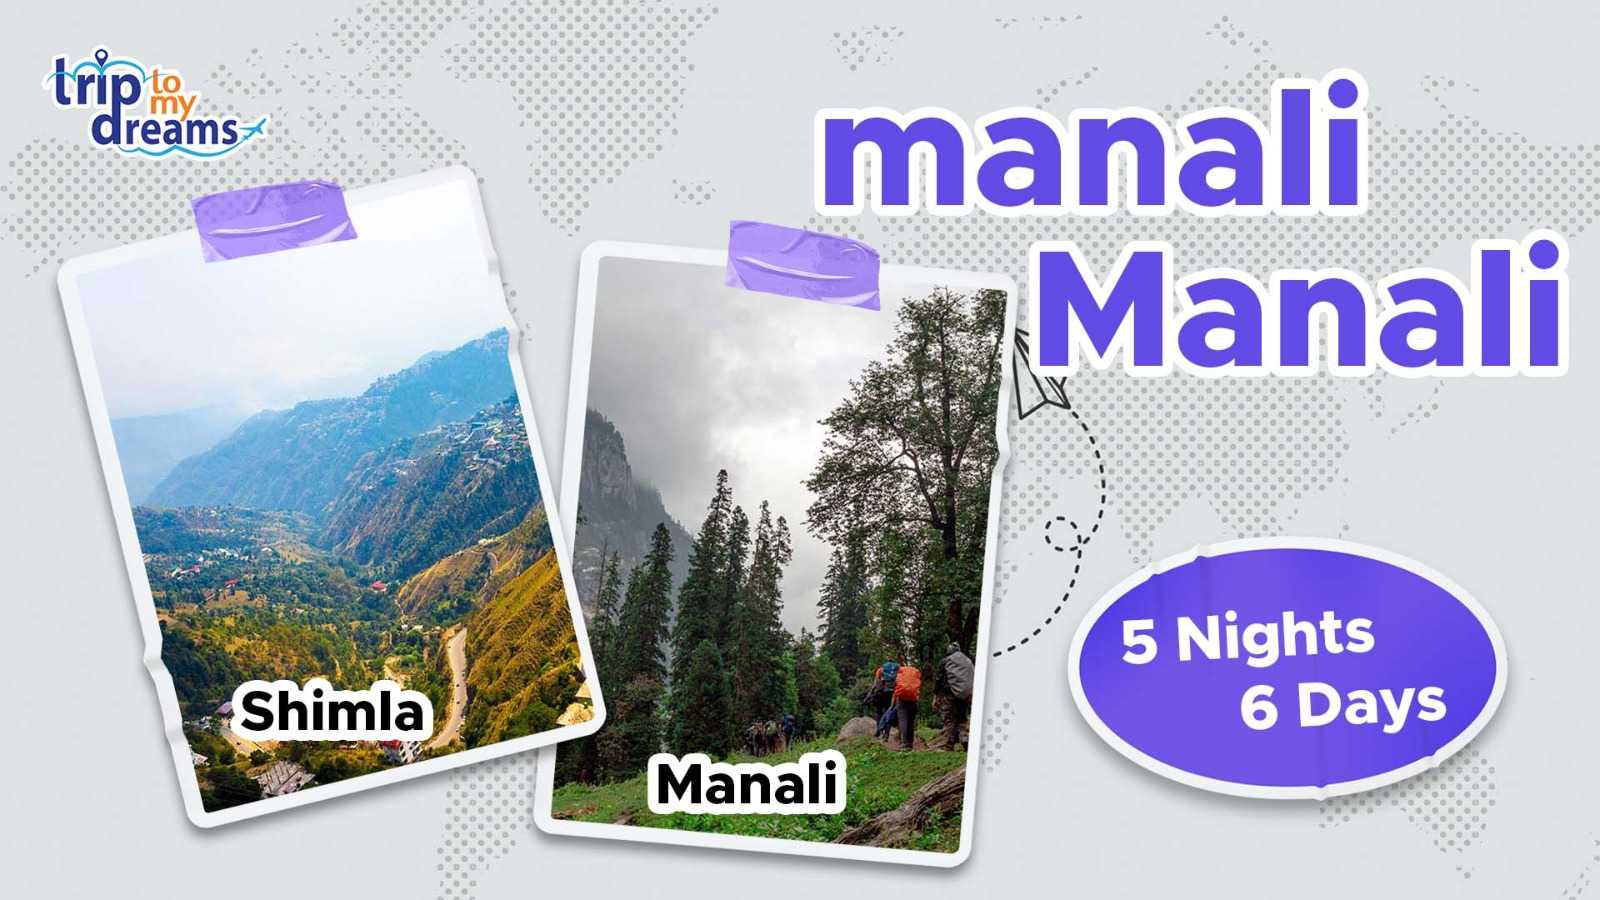 Shimla & Manali 5 NIGHTS 6 DAYS